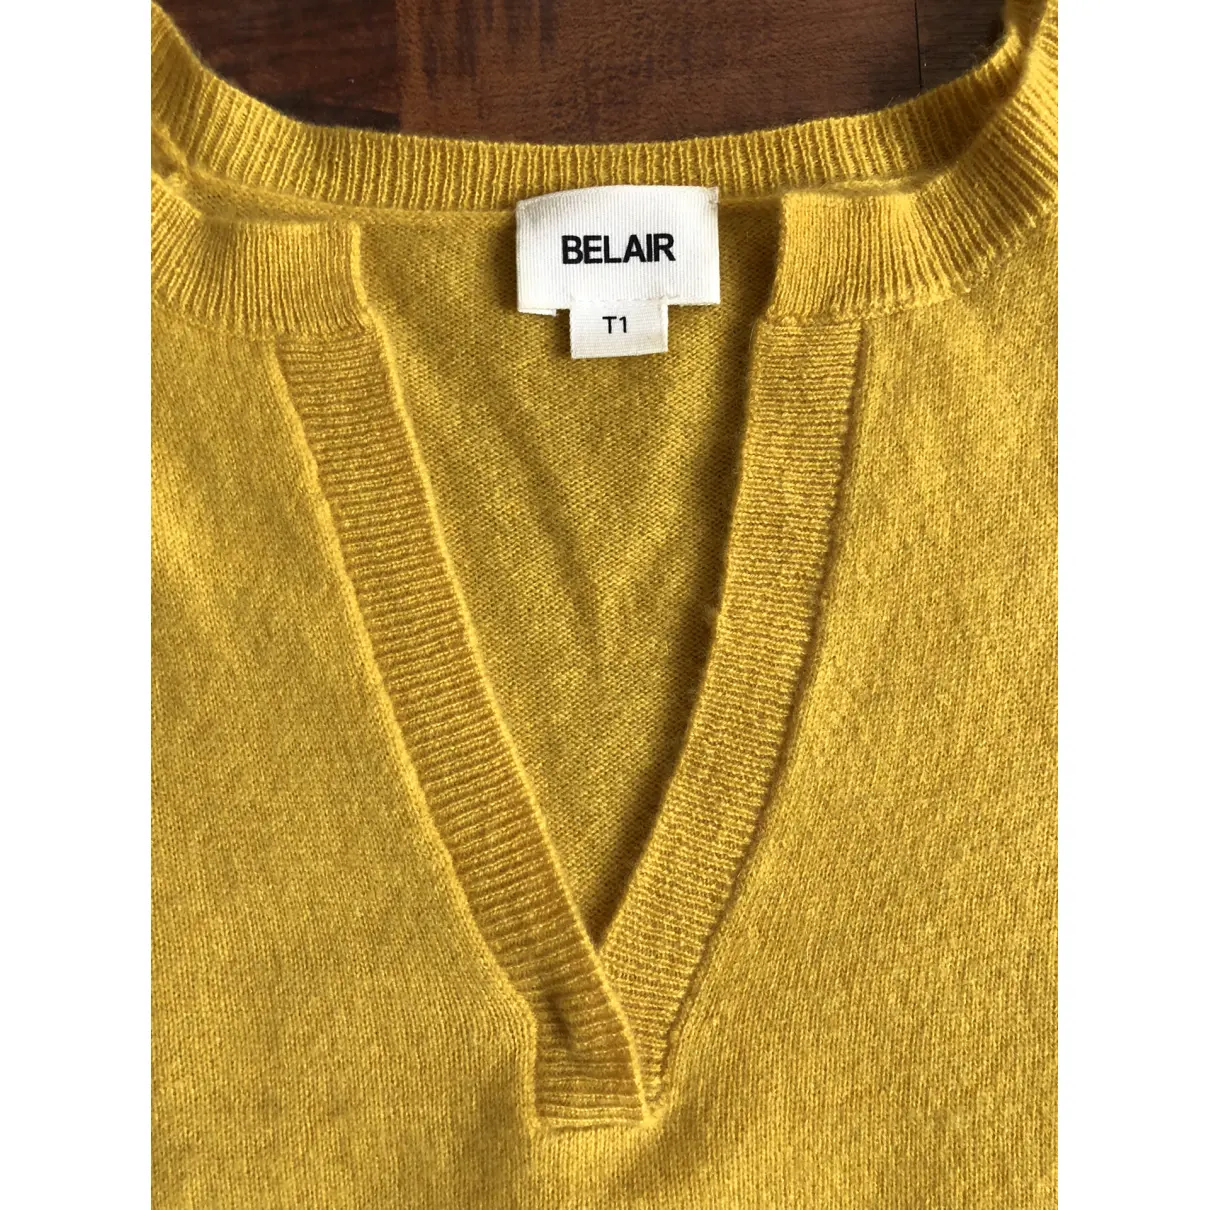 Buy Bel Air Cashmere jumper online